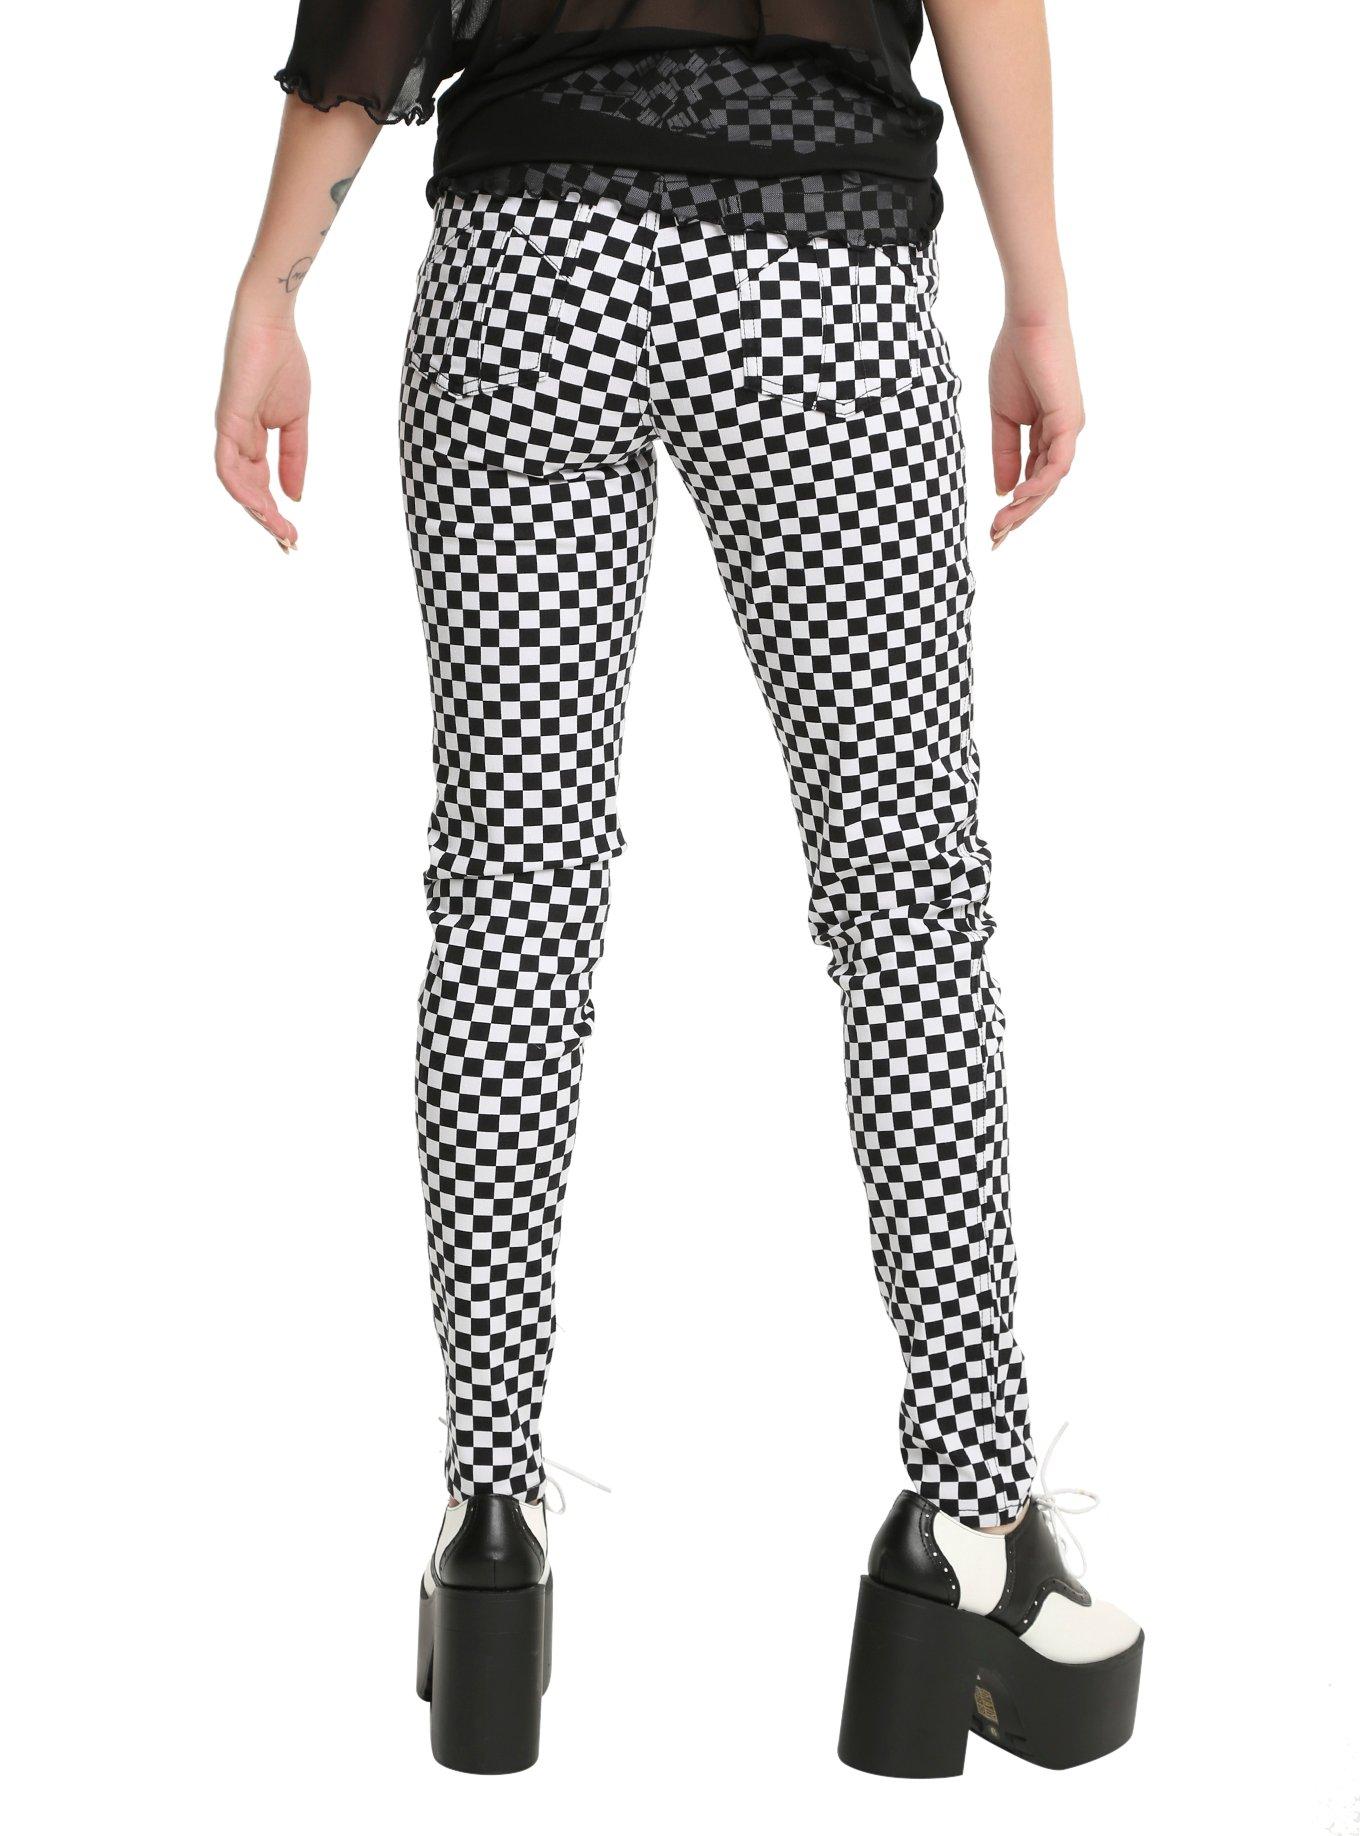 Tripp Black & White Checkered Print Skinny Jeans, , alternate